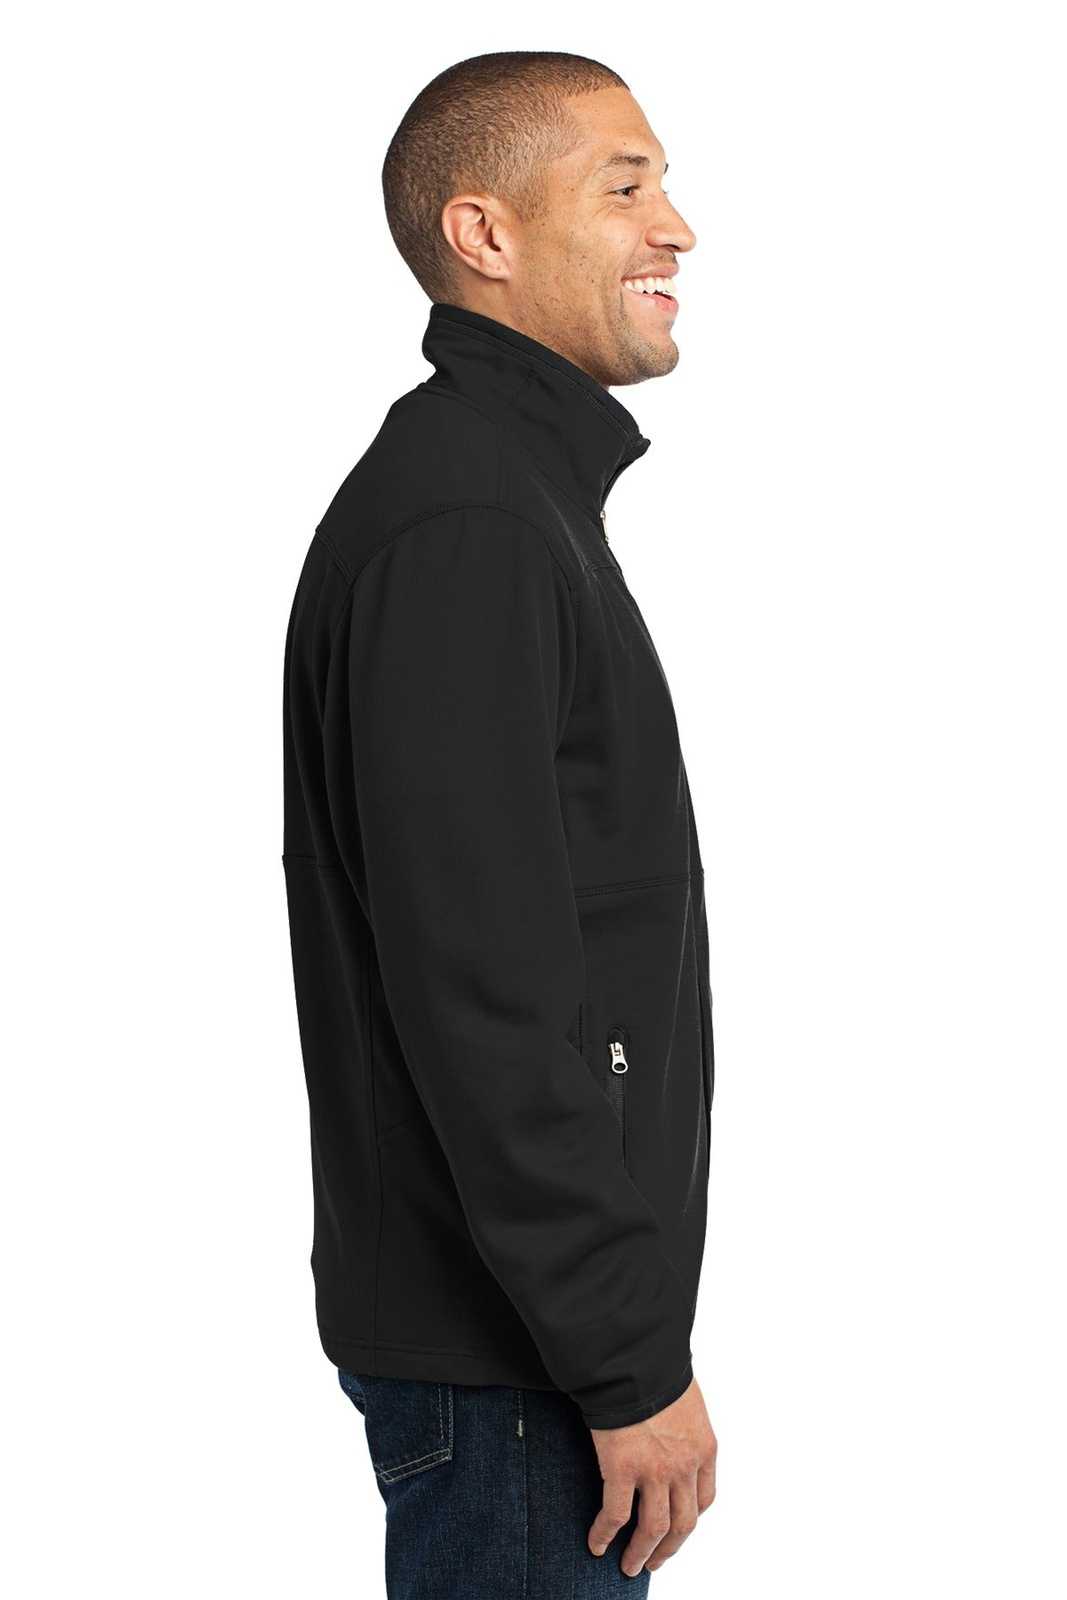 Port Authority F222 Pique Fleece Jacket - Black - HIT a Double - 3